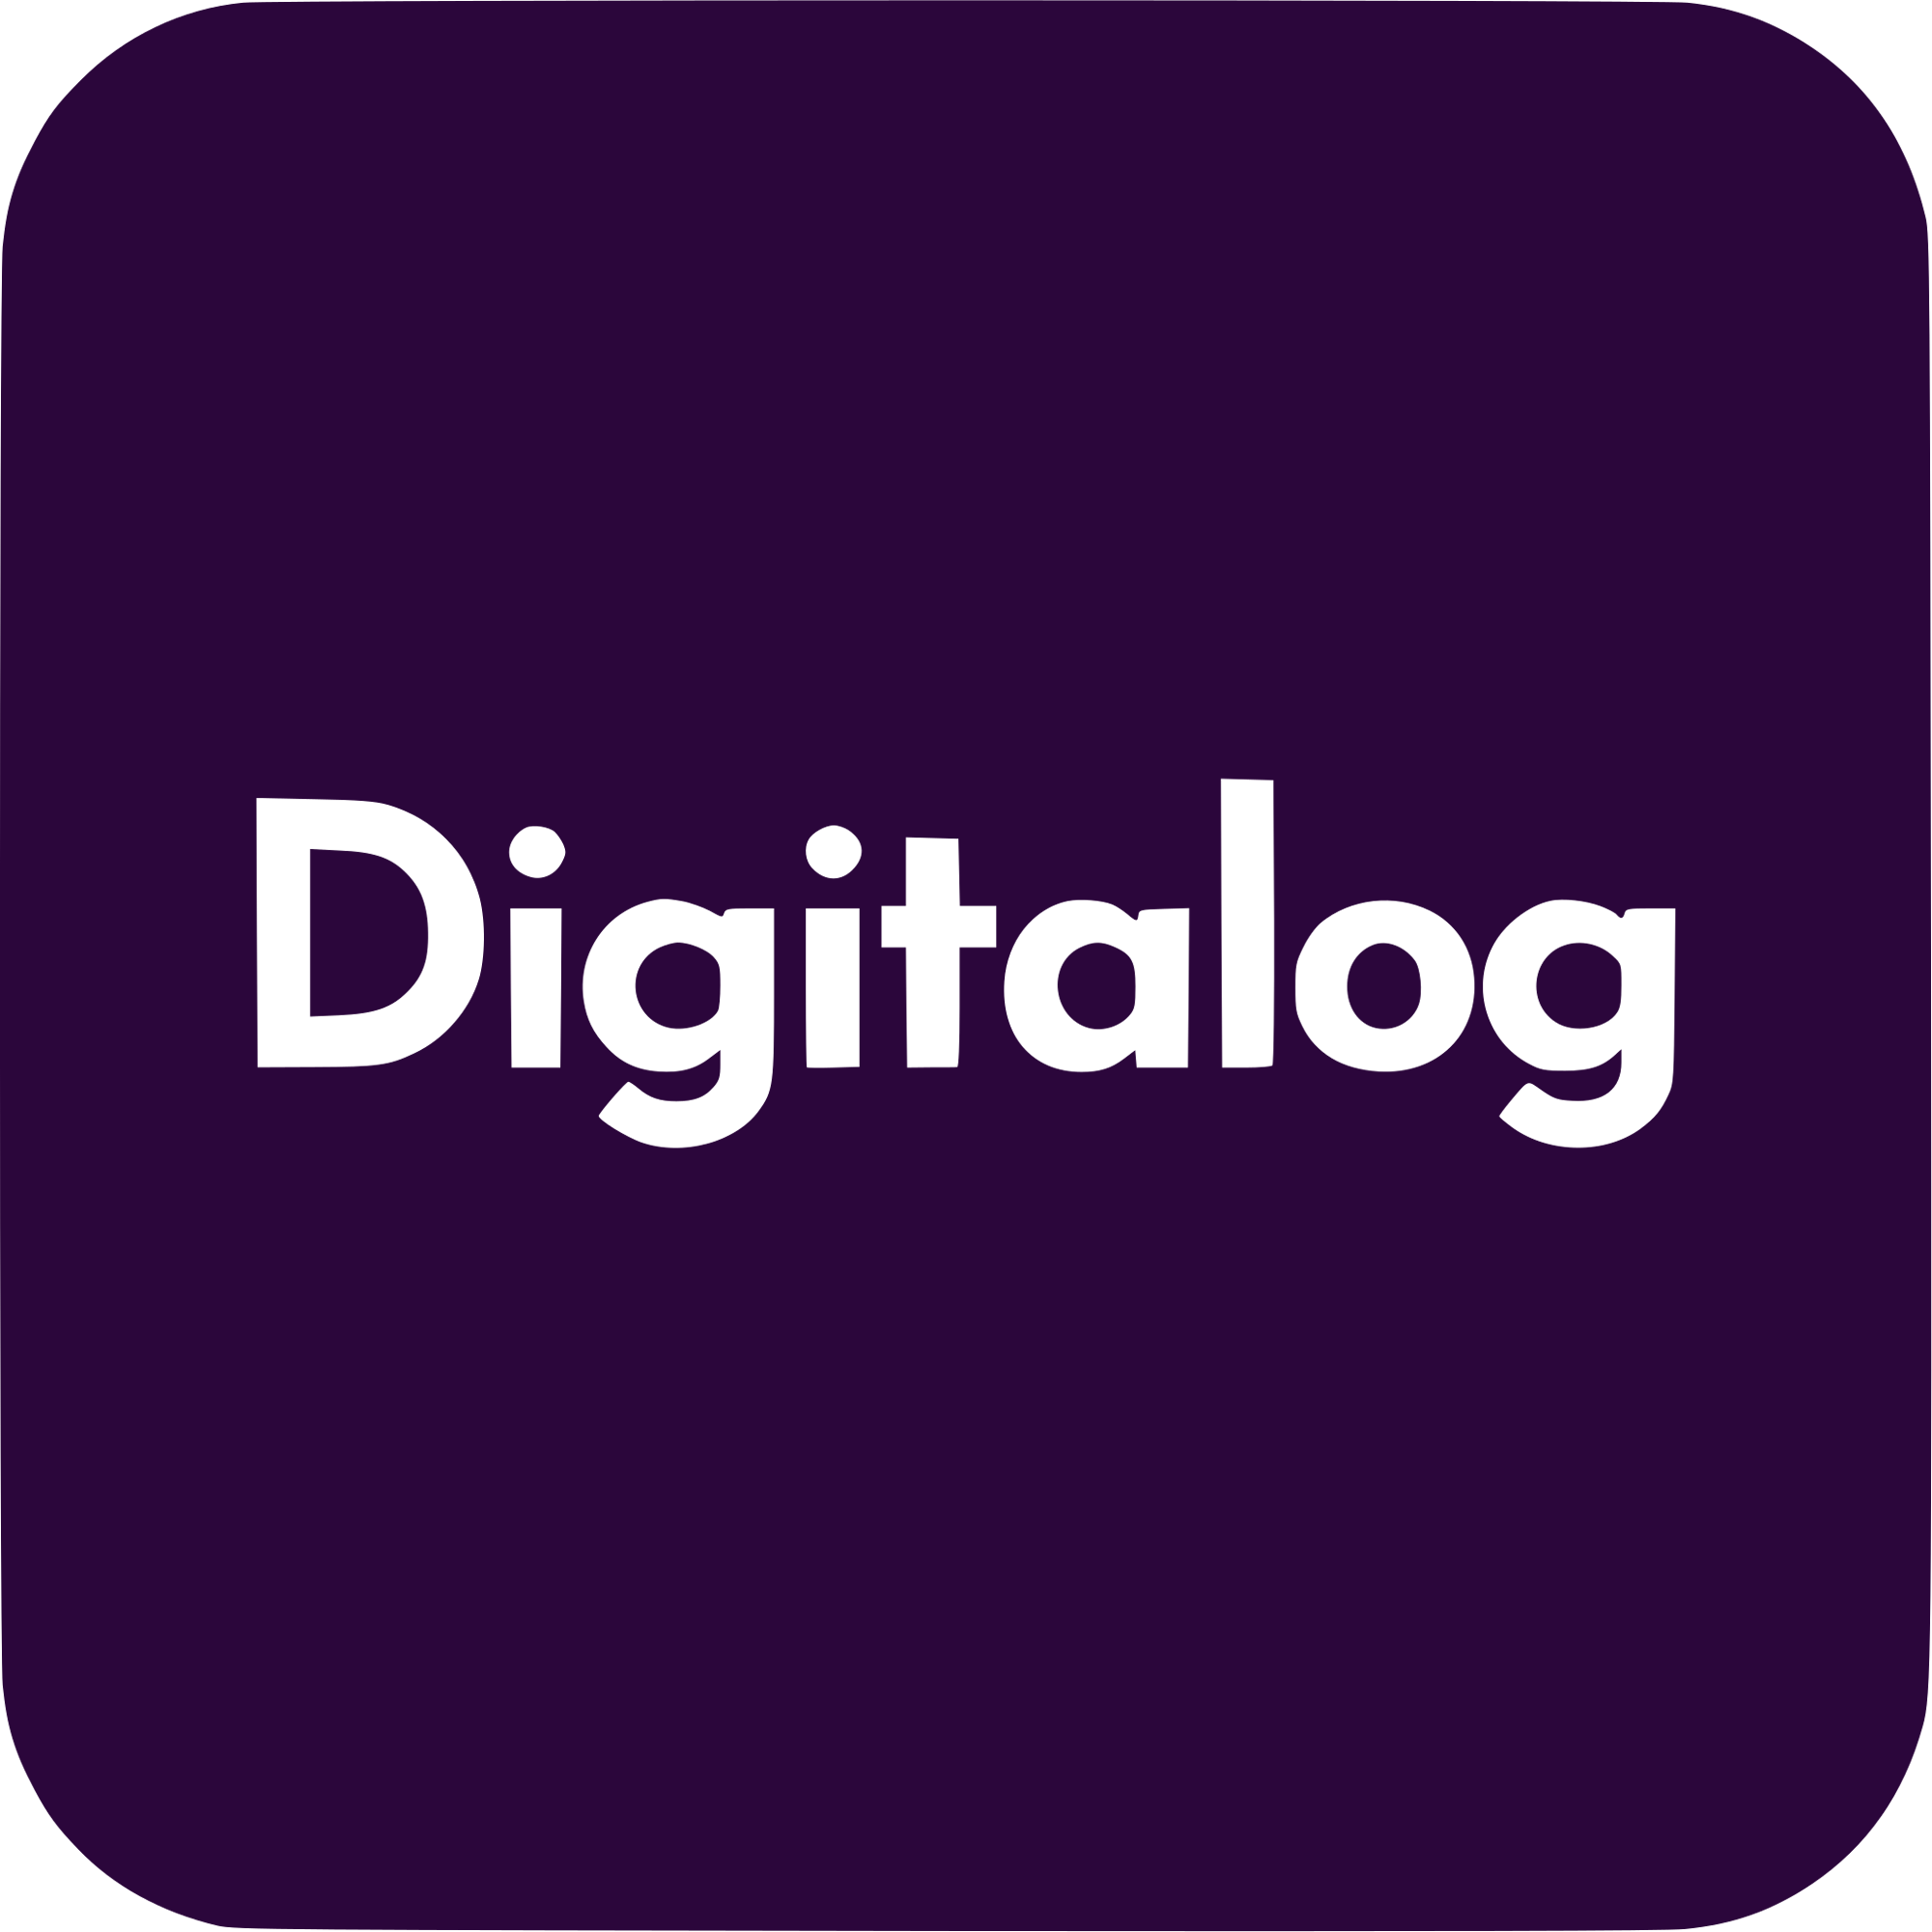 Digitalog Logo  Transparent Gallery